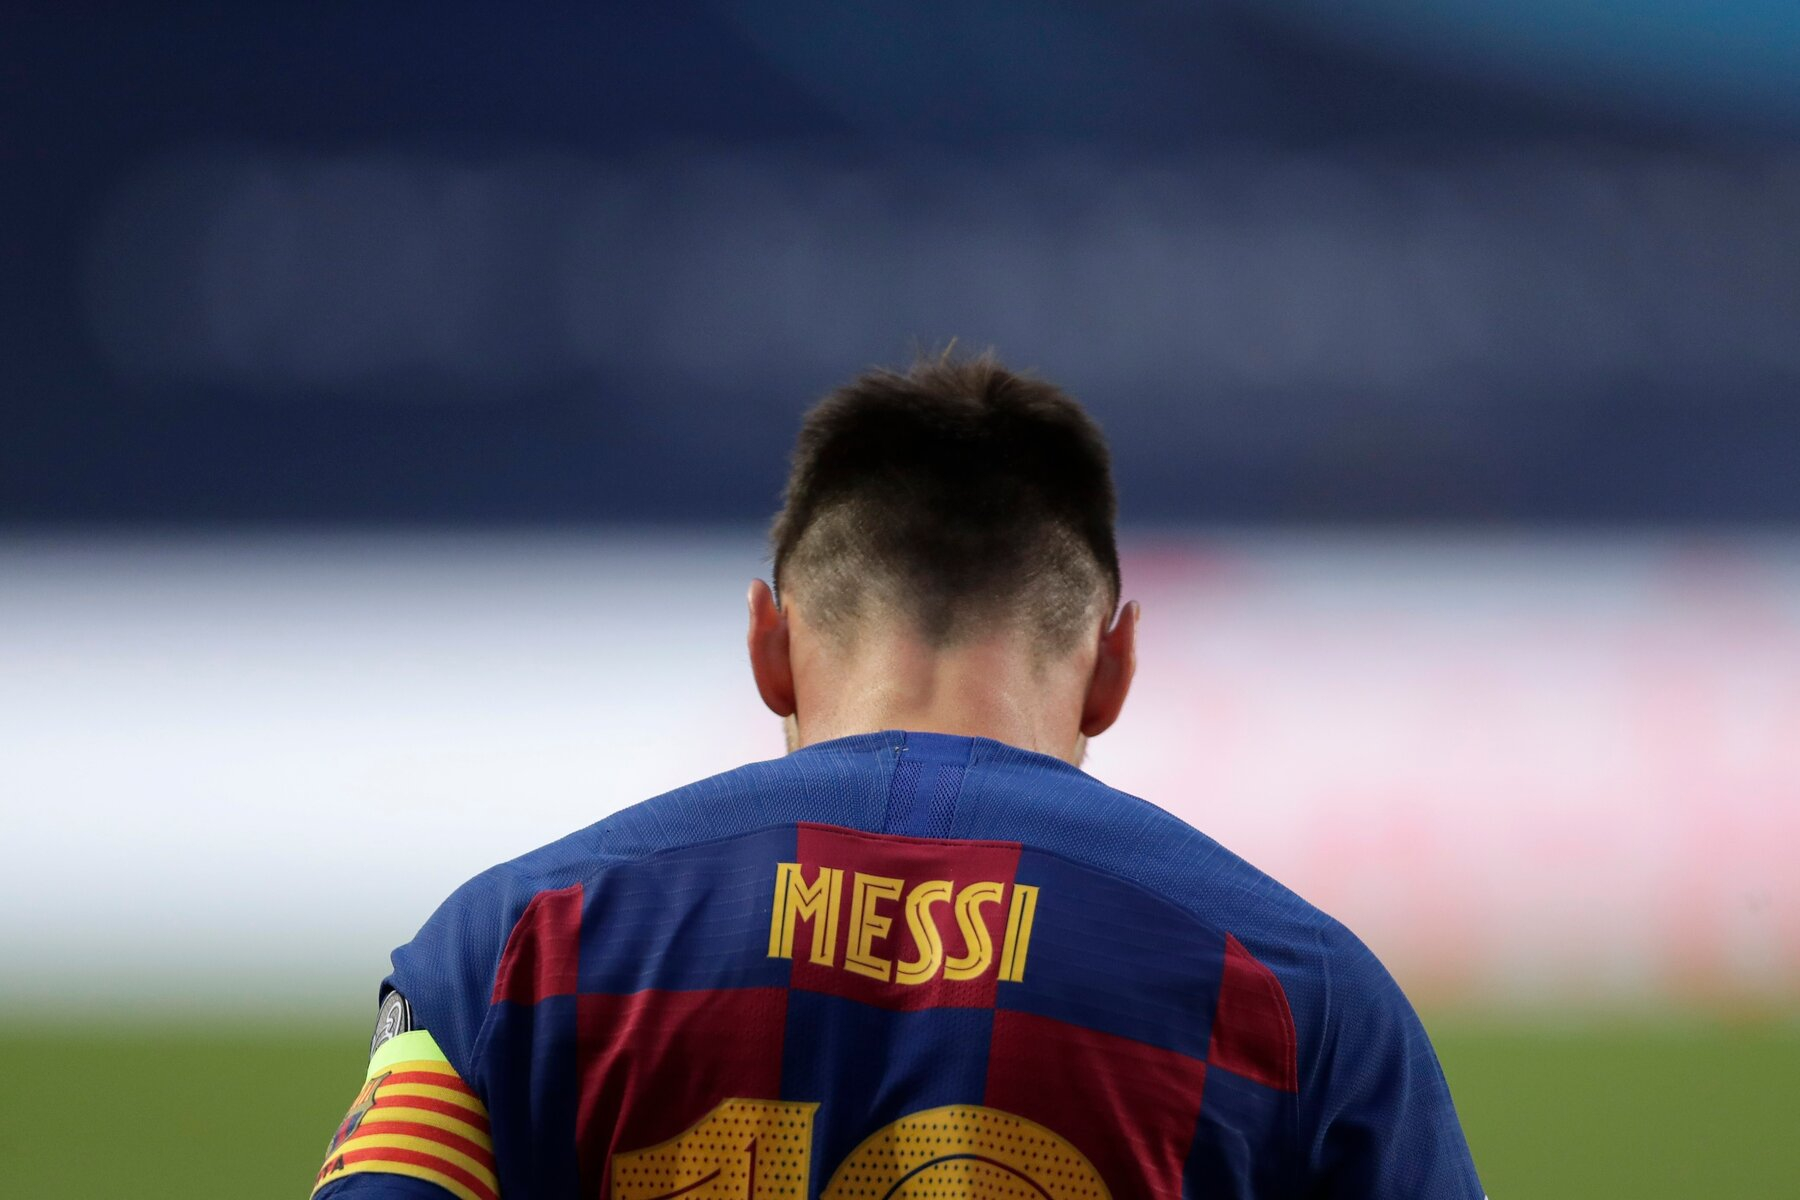 Clasico : Les Statistiques «avilissantes» de Messi depuis le départ de Ronaldo